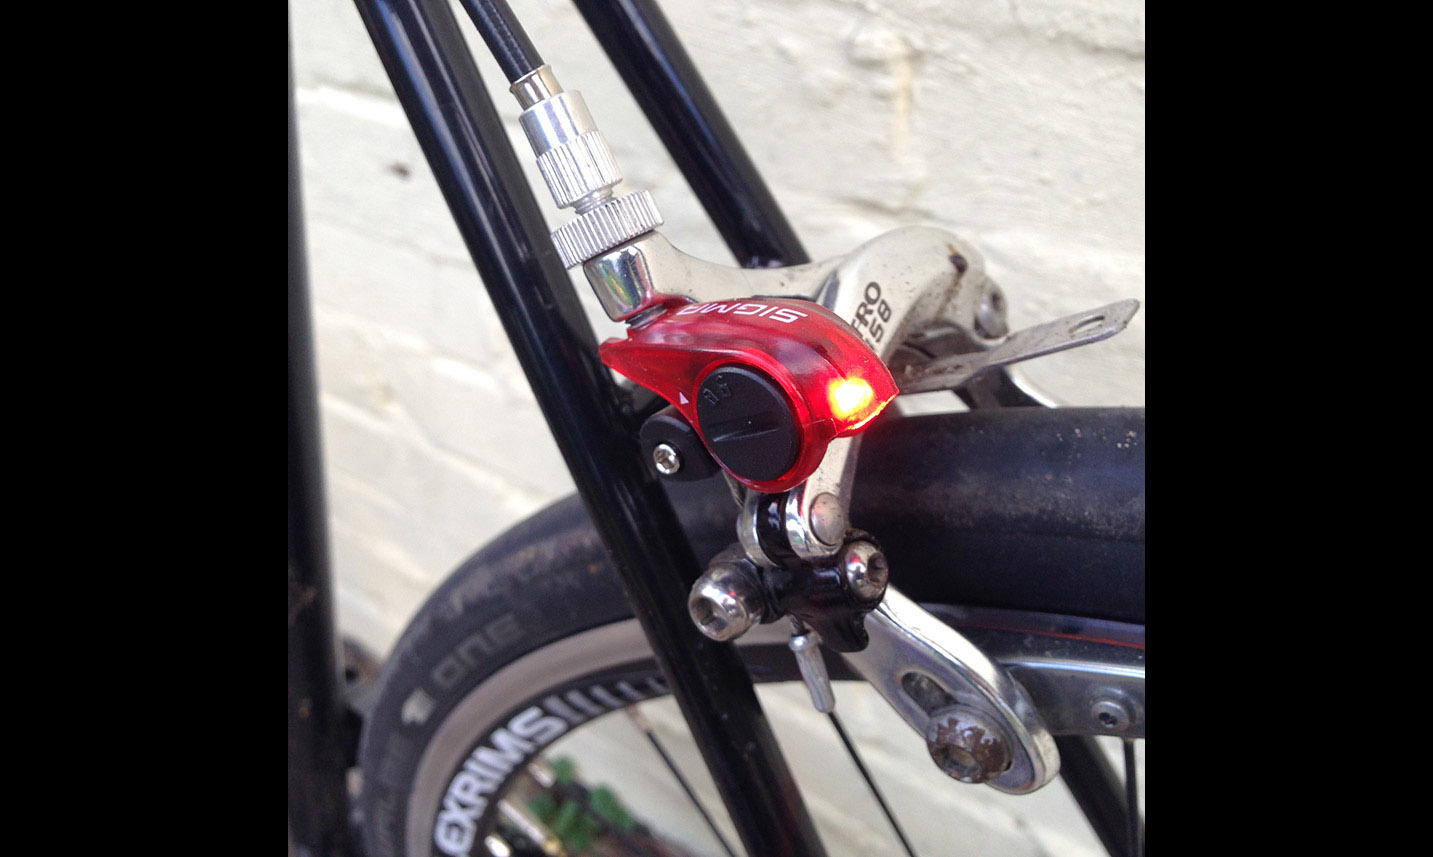 sigma bike light